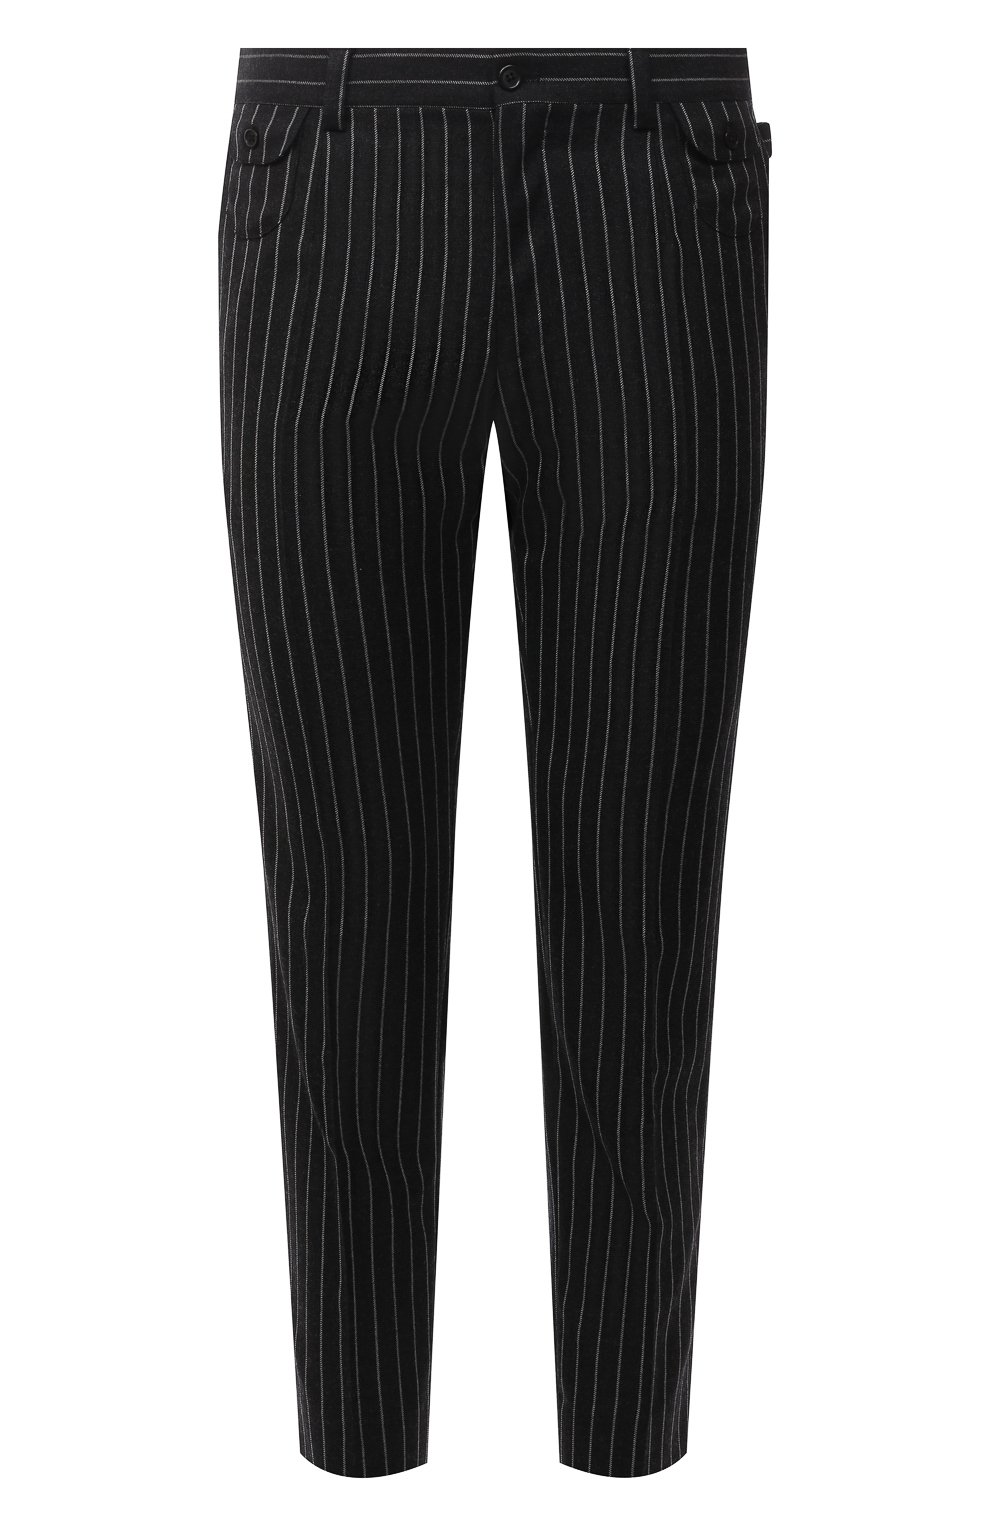 Мужские шерстяные брюки DOLCE & GABBANA темно-серого цвета, арт. GWBQET/FR2XI | Фото 1 (Материал внешний: Шерсть; Длина (брюки, джинсы): Стандартные; Стили: Классический; Случай: Формальный; Материал подклада: Вискоза)